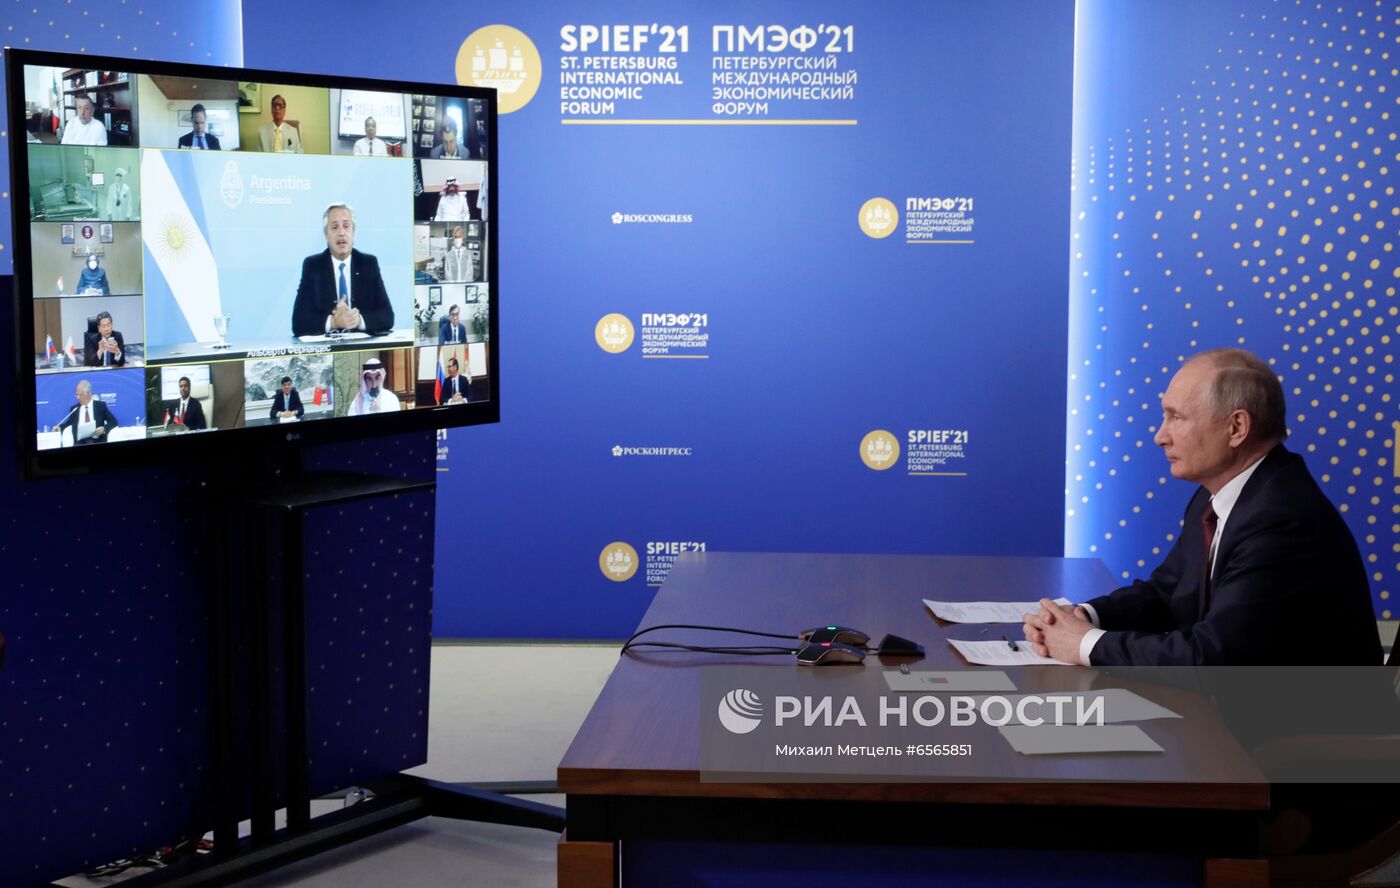 Президент РФ В. Путин провел встречу с экспертным советом РФПИ, лидерами международного инвестиционного сообщества и представителями иностранных компаний - производителей вакцины "Спутник V"